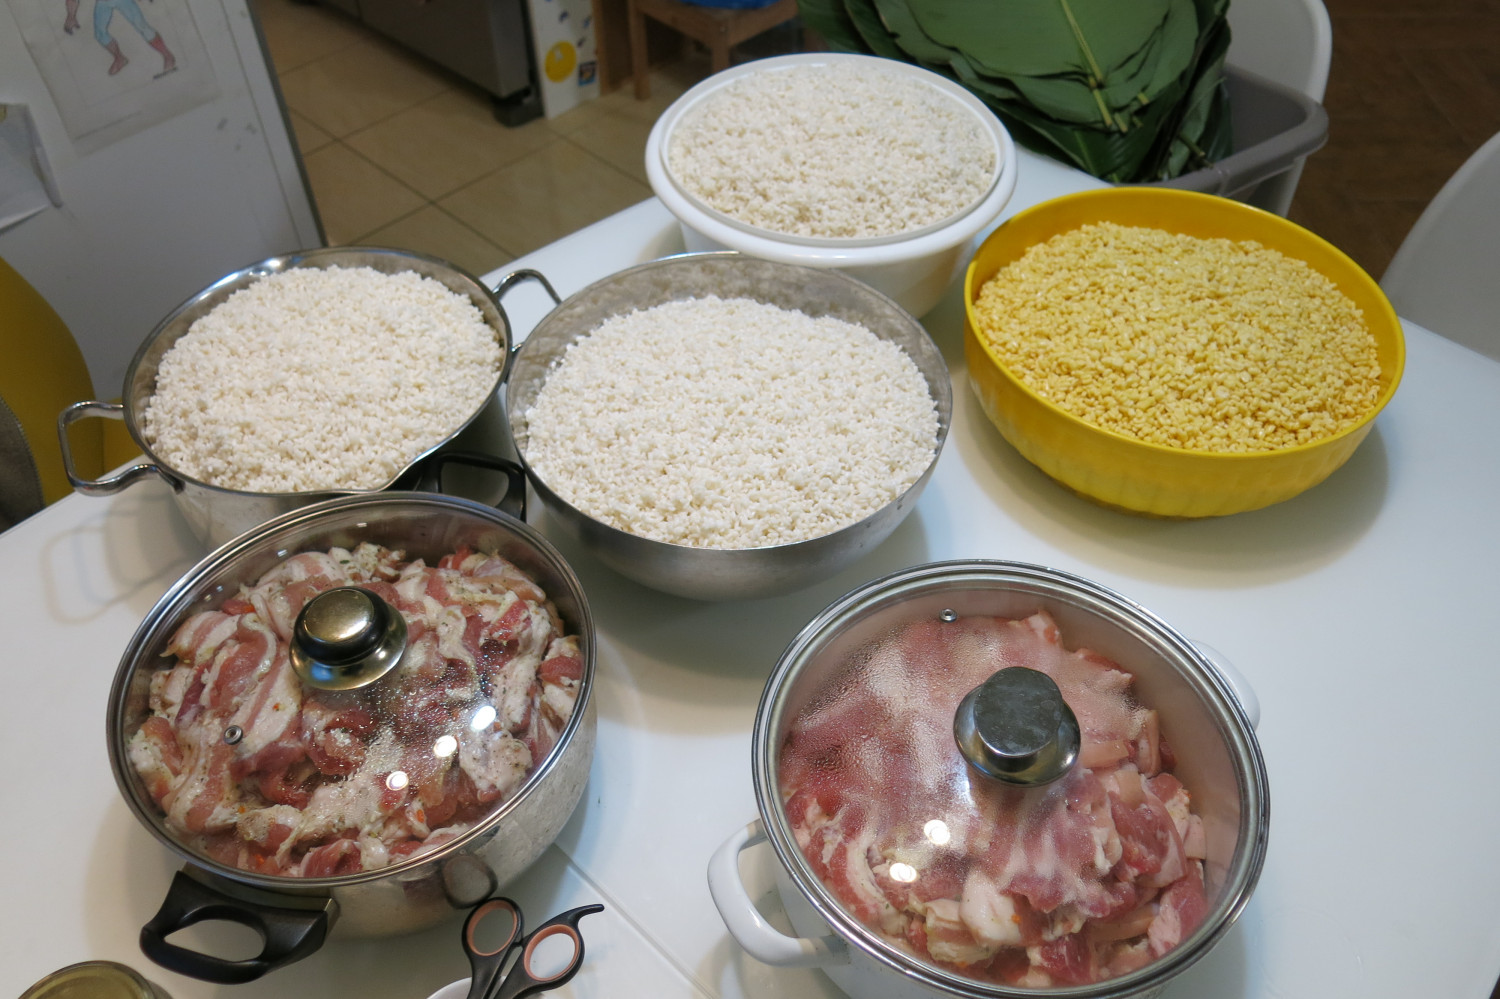 Lá dong, lạt, thịt, đỗ, gạo... đều đã được chuẩn bị trước